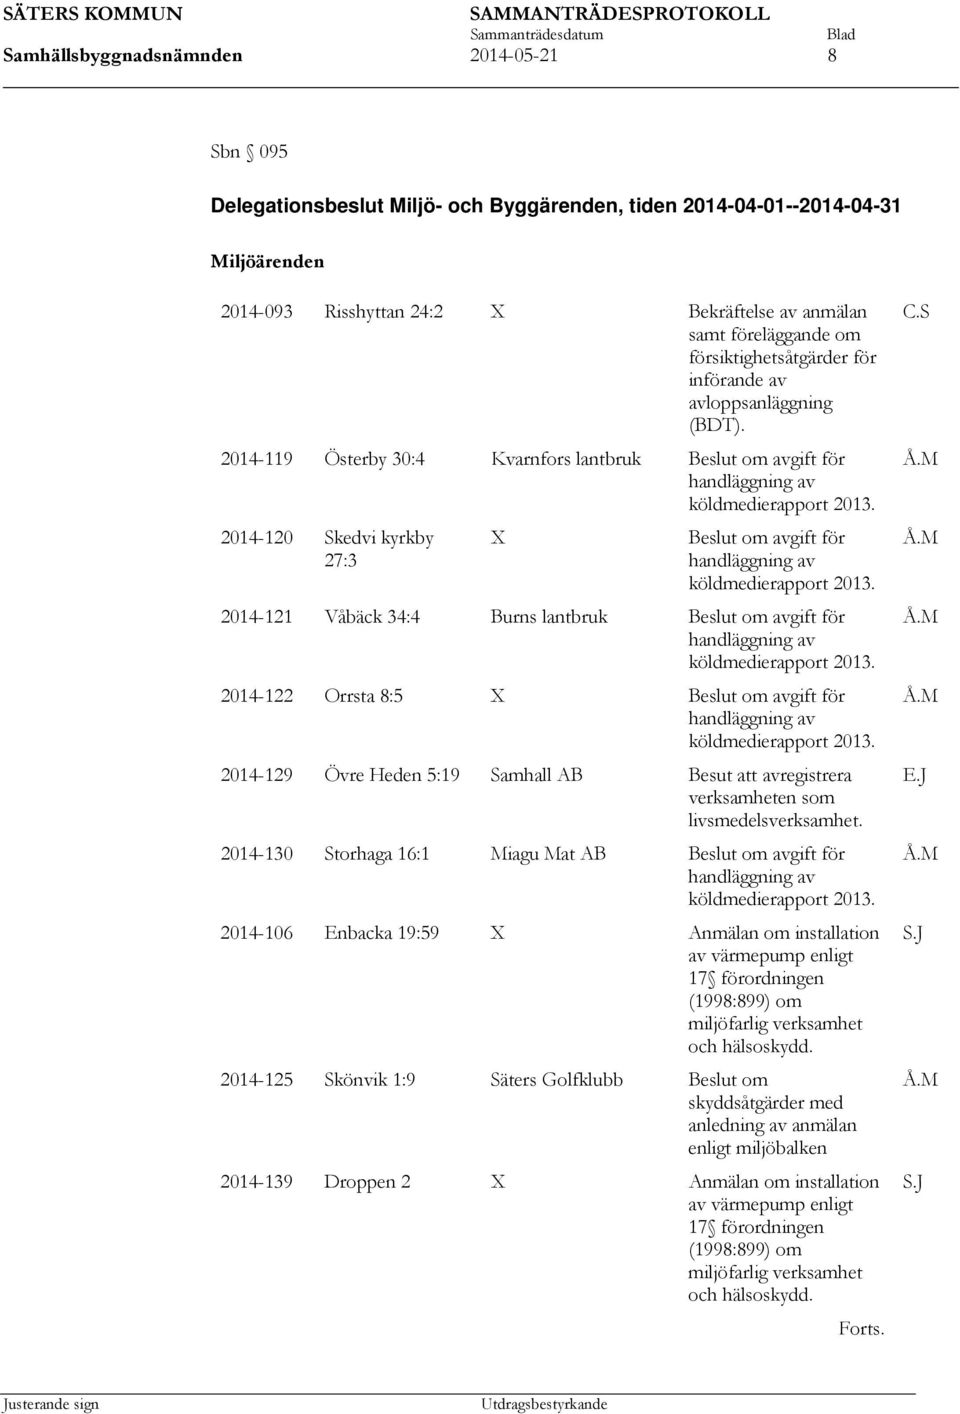 2014-120 Skedvi kyrkby 27:3 X om avgift för handläggning av köldmedierapport 2013. 2014-121 Våbäck 34:4 Burns lantbruk om avgift för handläggning av köldmedierapport 2013.